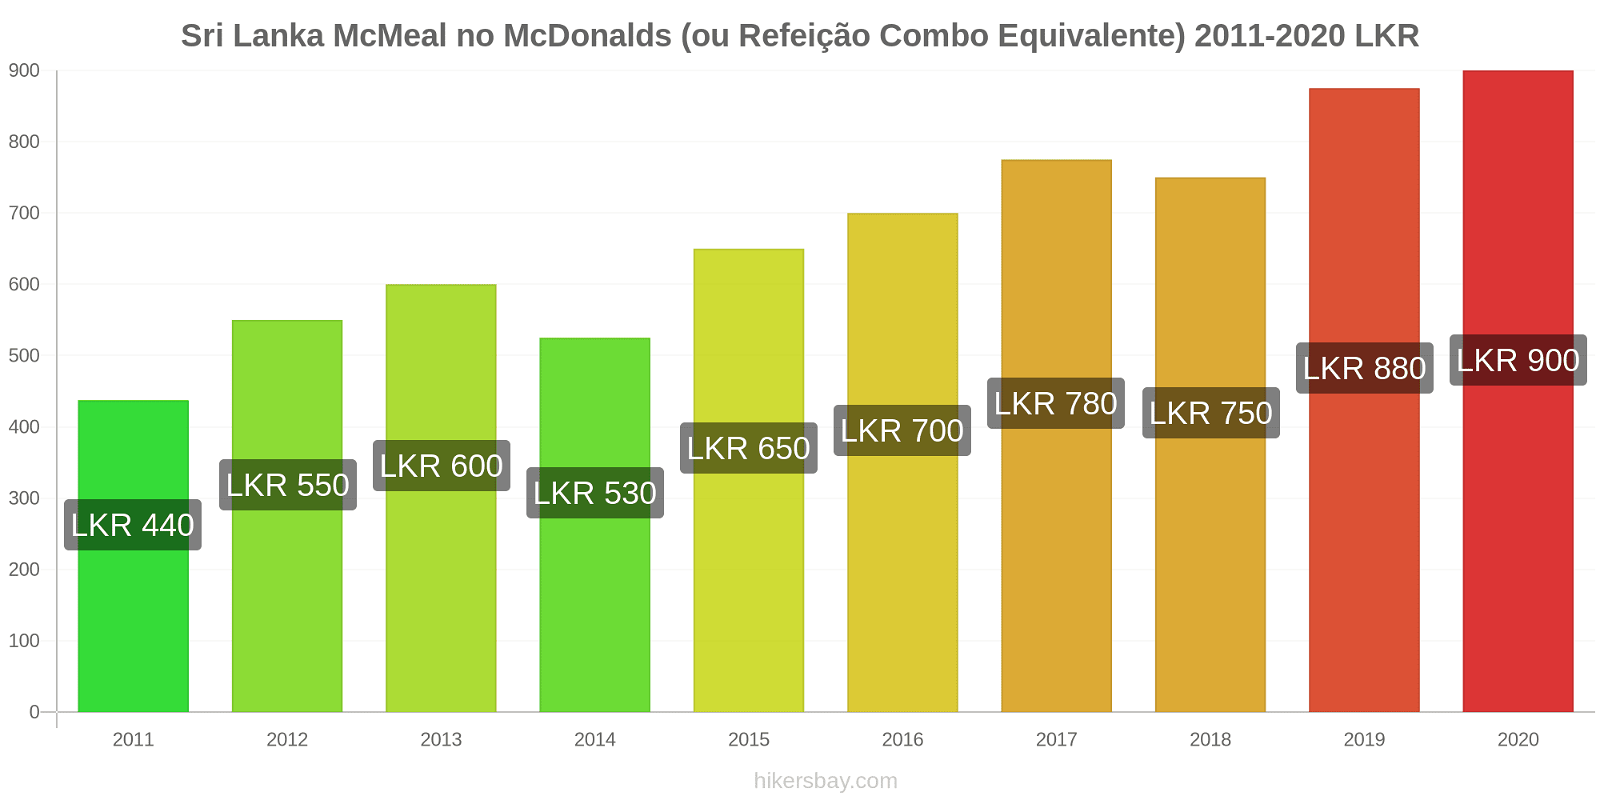 Sri Lanka variação de preço McMeal no McDonald ' s (ou refeição Combo equivalente) hikersbay.com